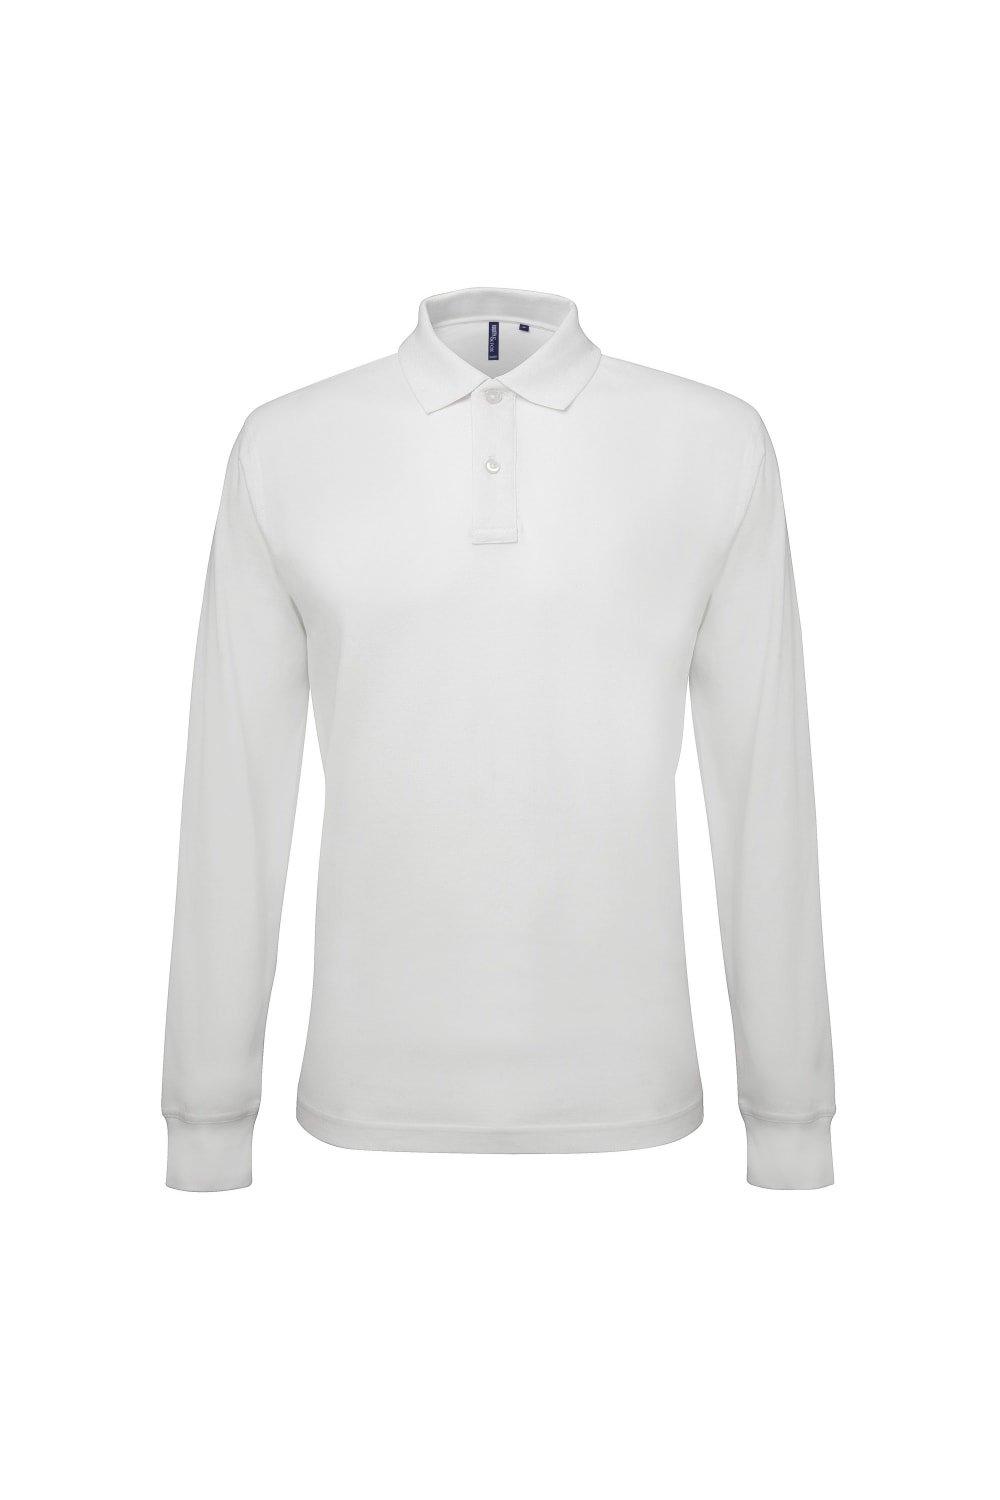 Рубашка поло классического кроя с длинными рукавами Asquith & Fox, белый рубашка поло с длинными рукавами lyle